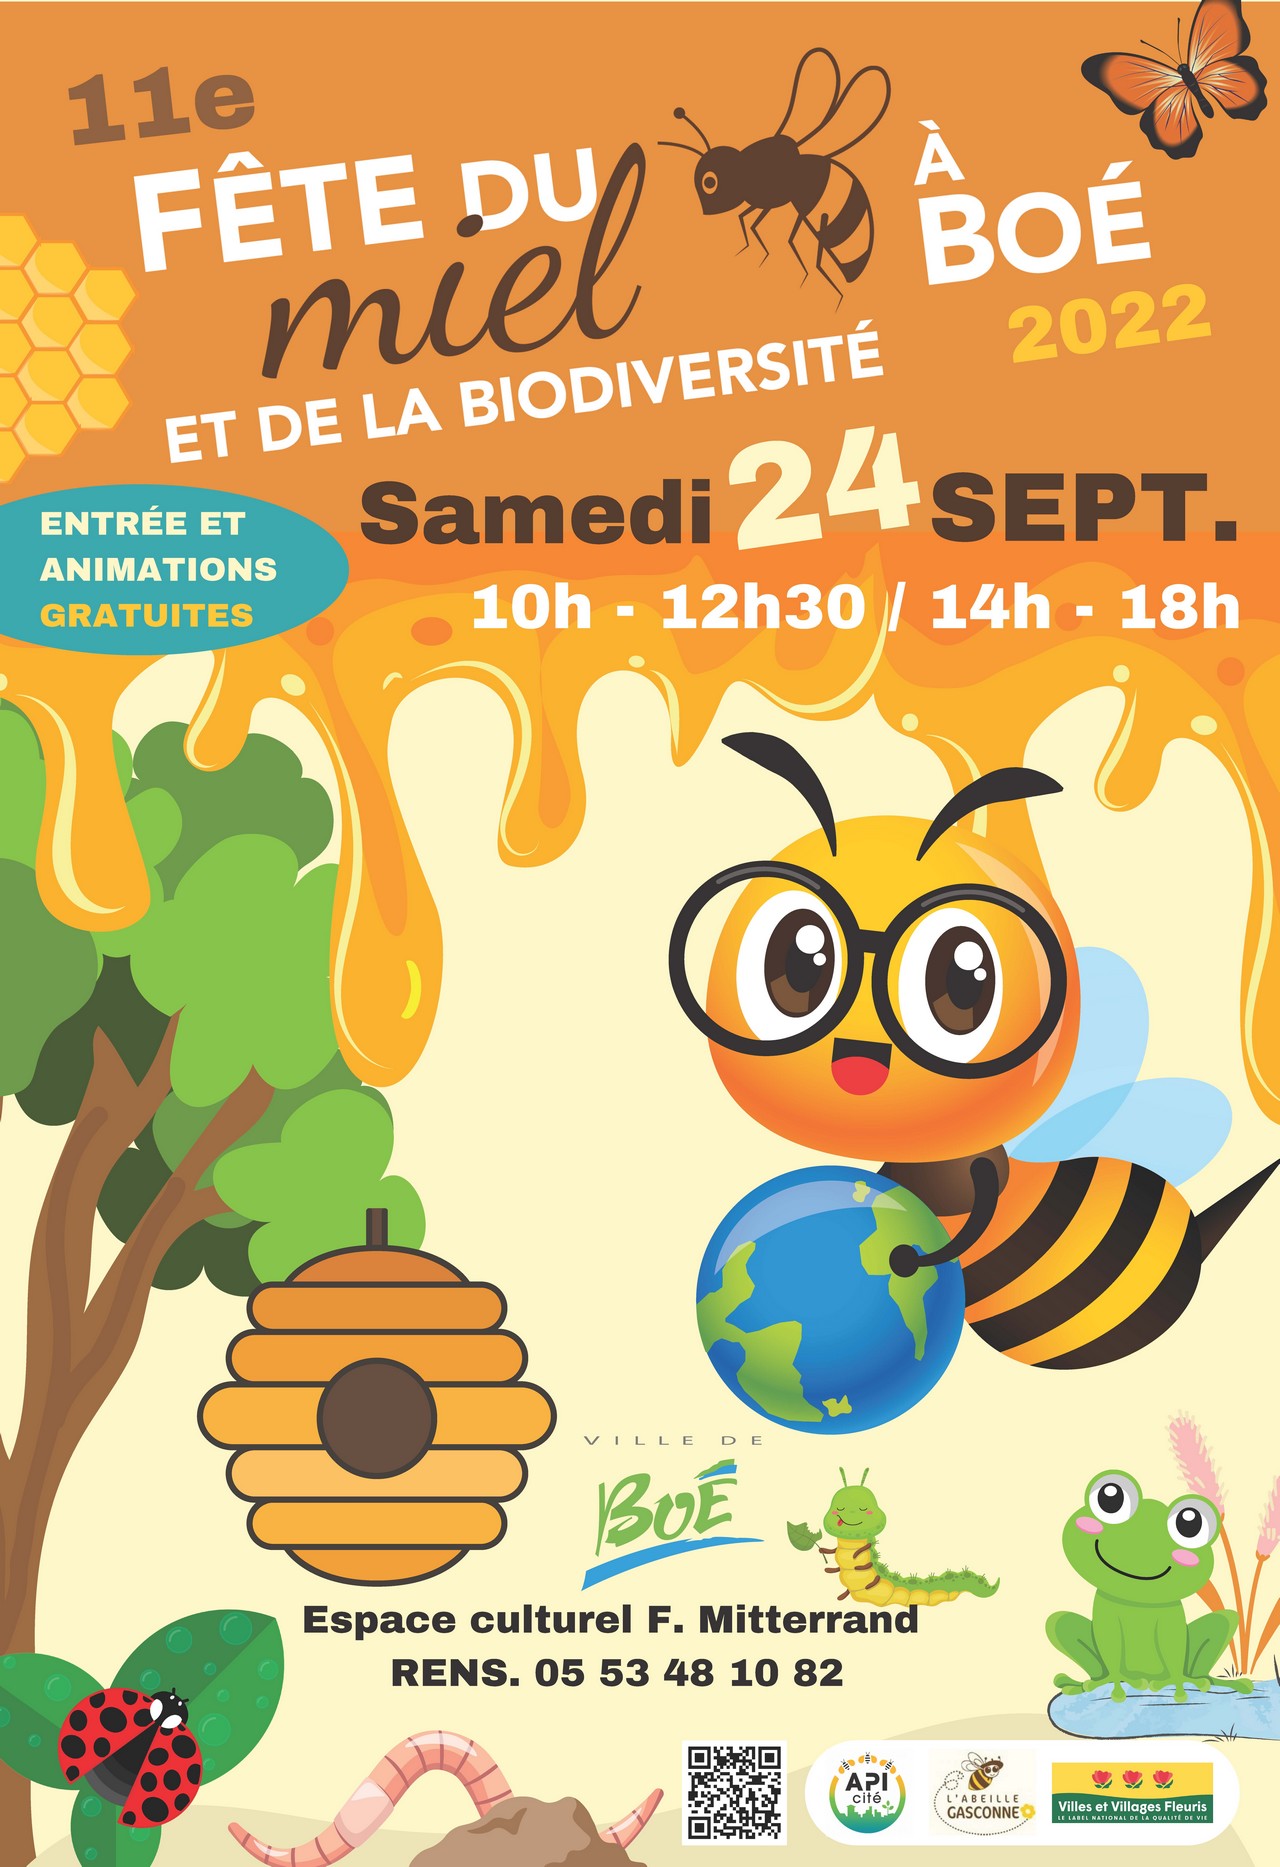 11e Fête du miel et de la biodiversité